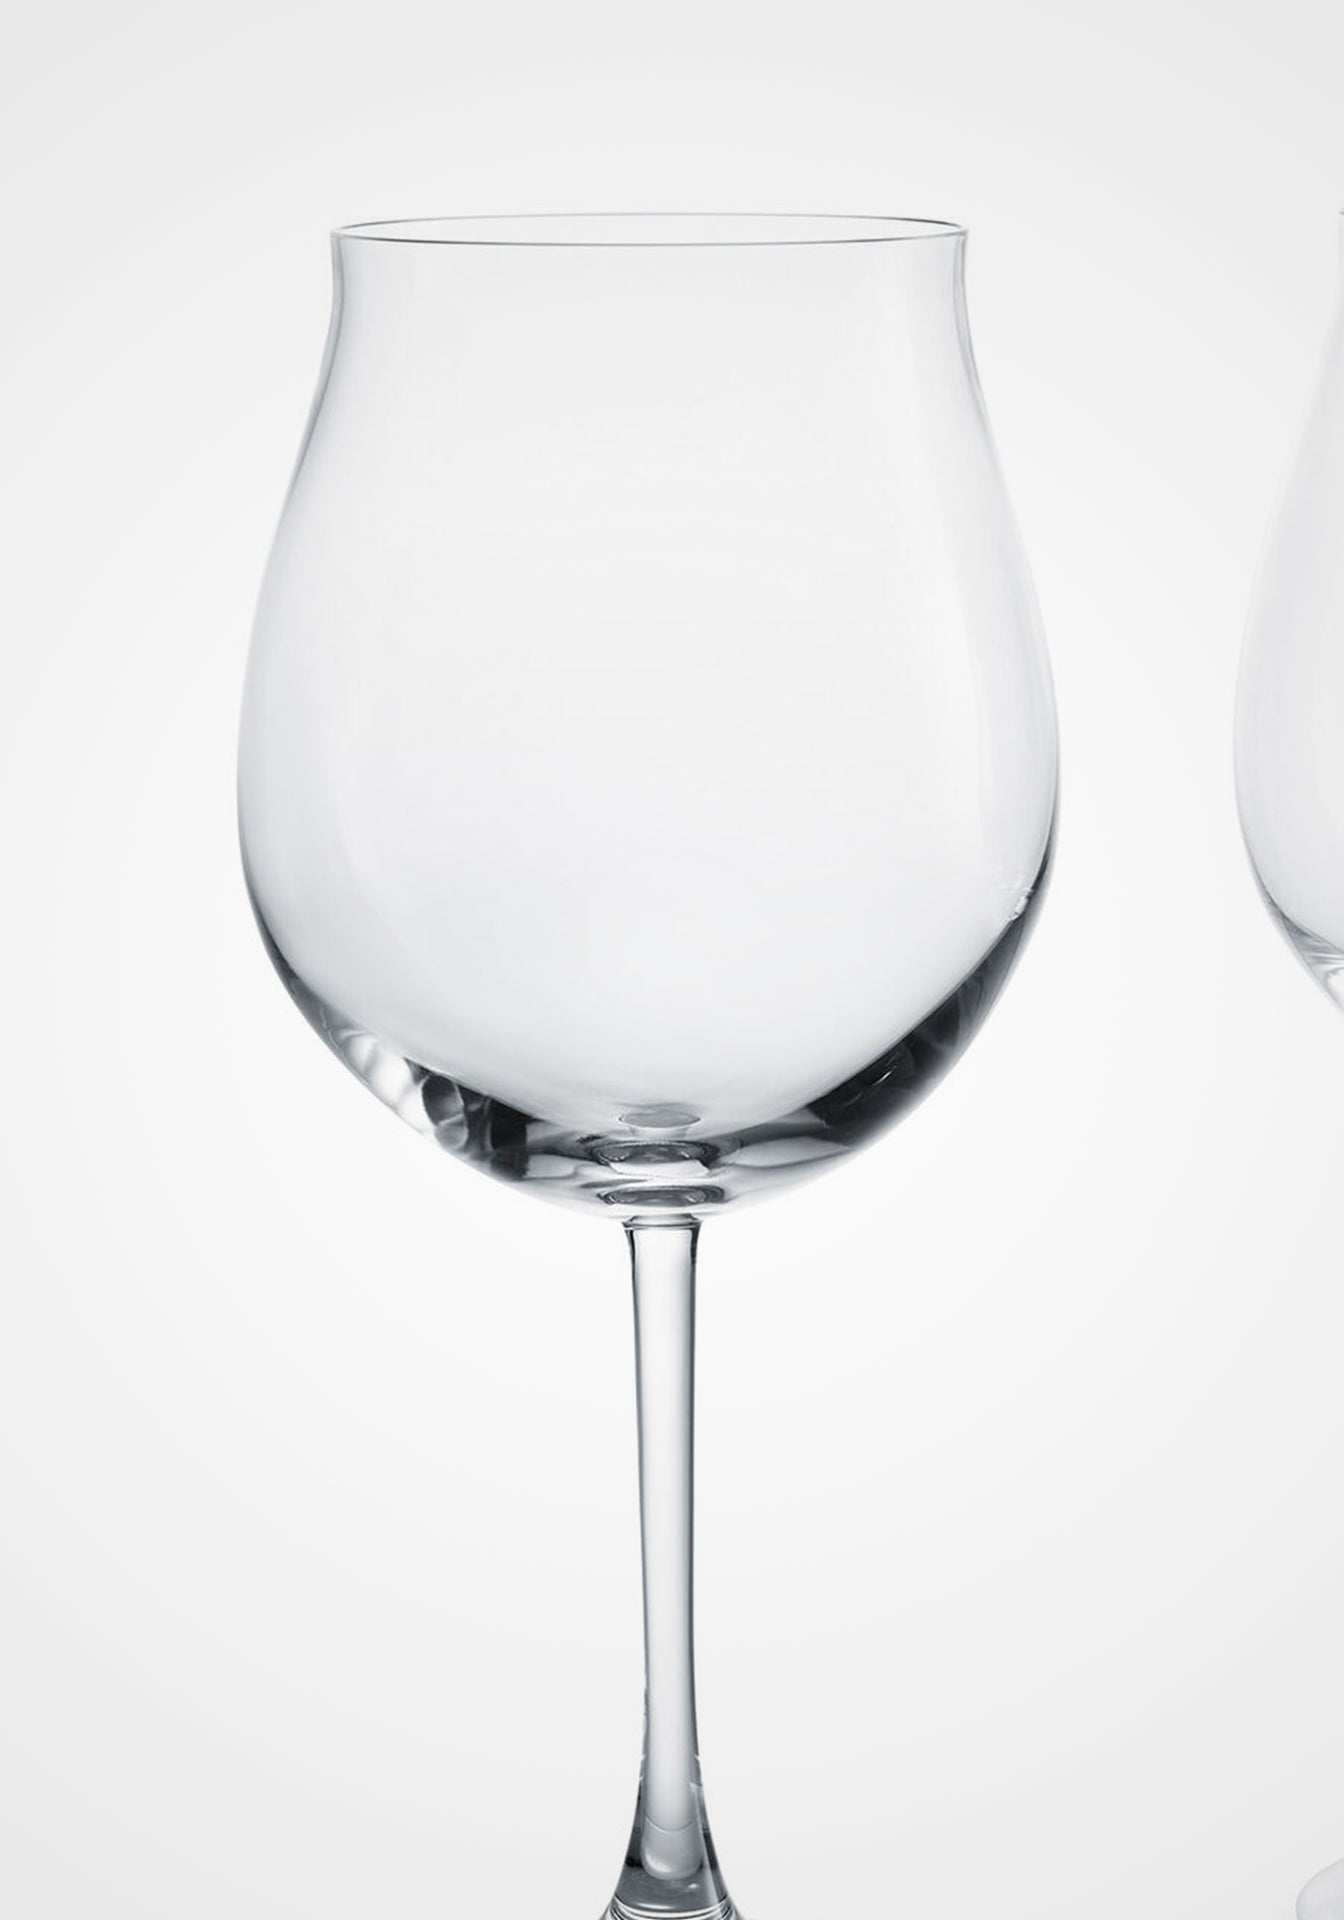 Grand Bourgogne Tasting Glasses